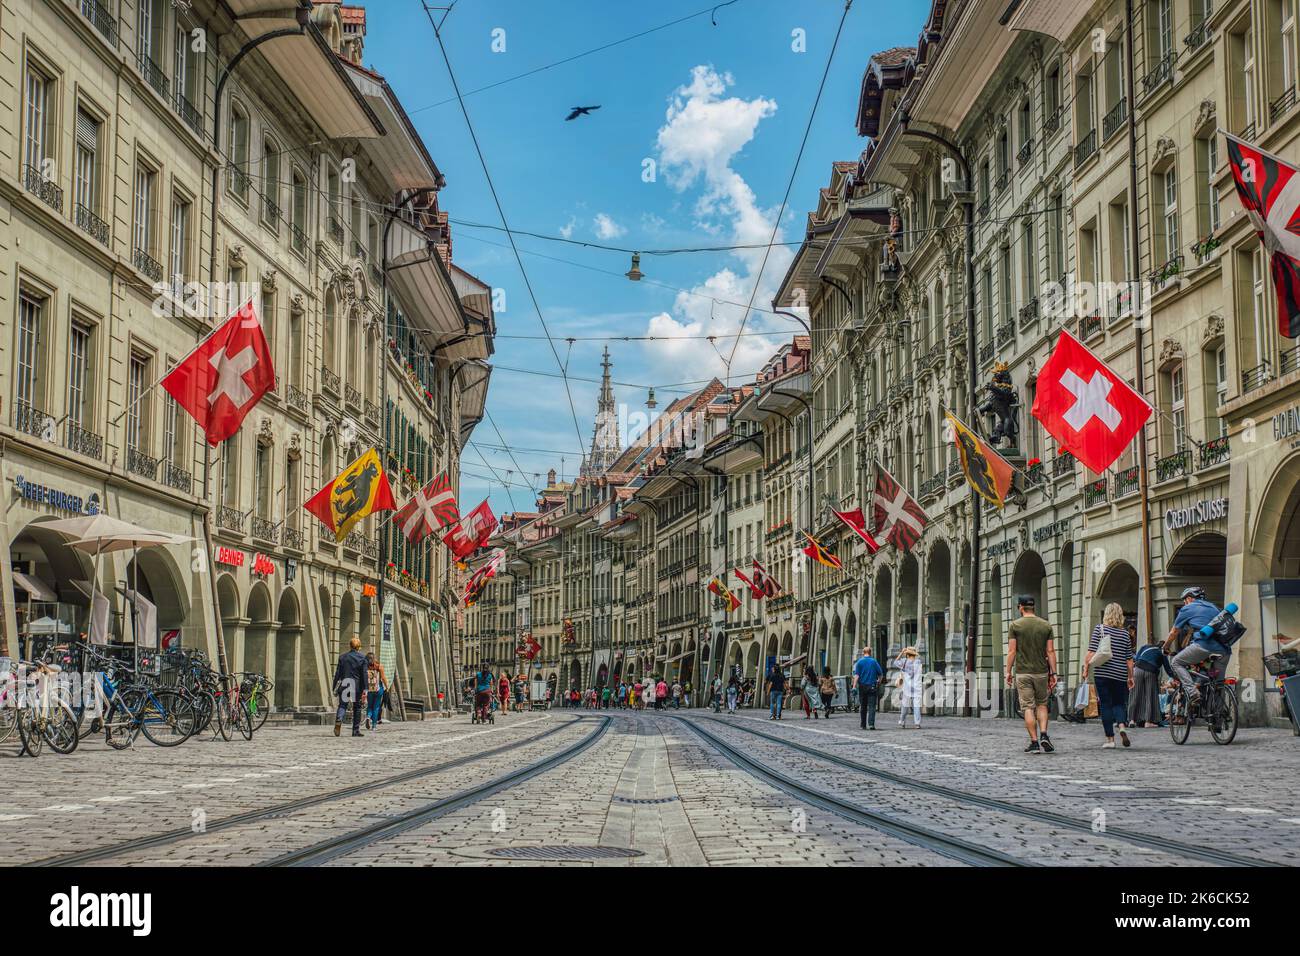 Marktgasse vue basse sur les pistes de tramway entre les maisons historiques suisses ou les bâtiments avec des drapeaux en drapeau. Cablecar dans le quartier historique de Berne Banque D'Images